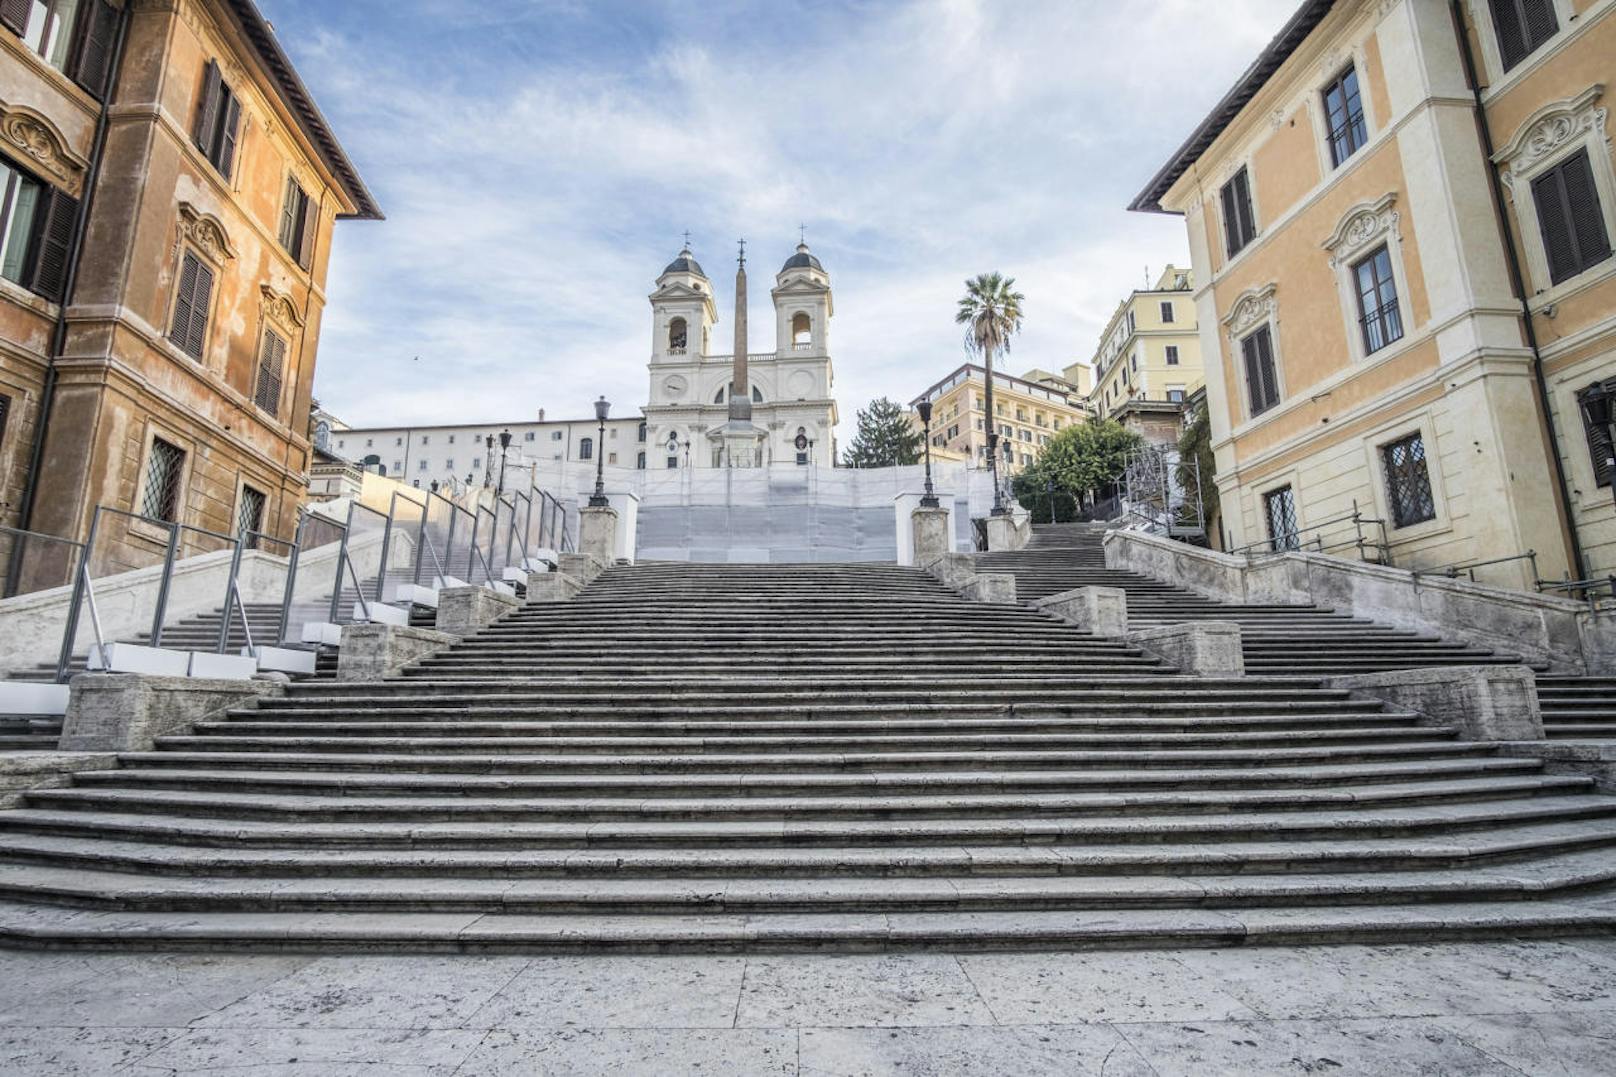 Bei Zuwiderhandlungen drohen Strafen von bis zu 400 Euro. Außerdem wurden weitere Verhaltensweisen in Rom verboten ... Einen Koffer oder Kinderwagen über die Spanische Treppe zu ziehen ist auch verboten.